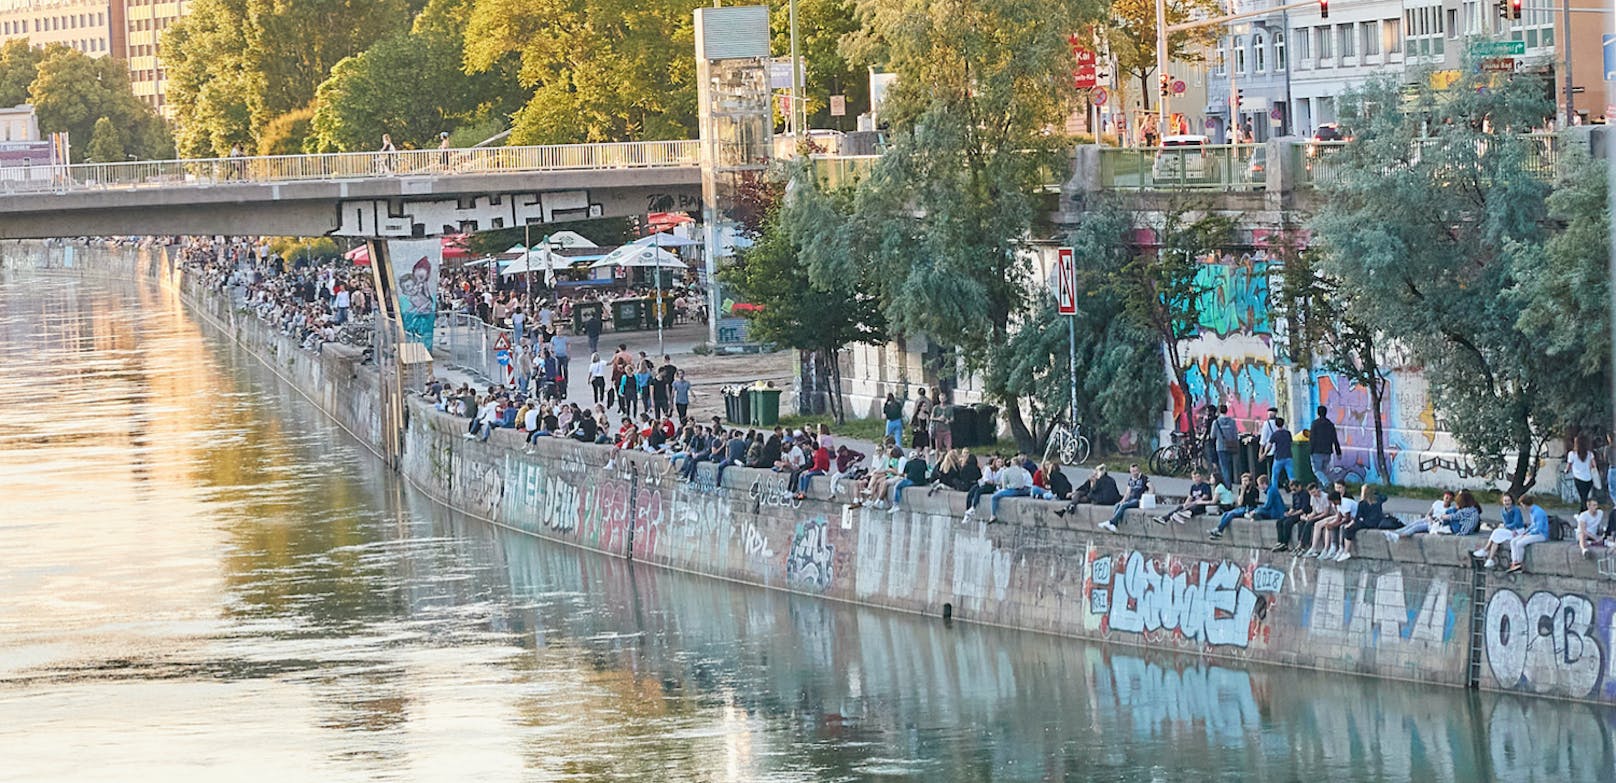 Am Donaukanal wird - für den Geschmack der Behörden – zu wild und mit zu wenig Abstand gefeiert. Auch der hinterlassene Mist sowie der Party-Lärm sind ein Problem.